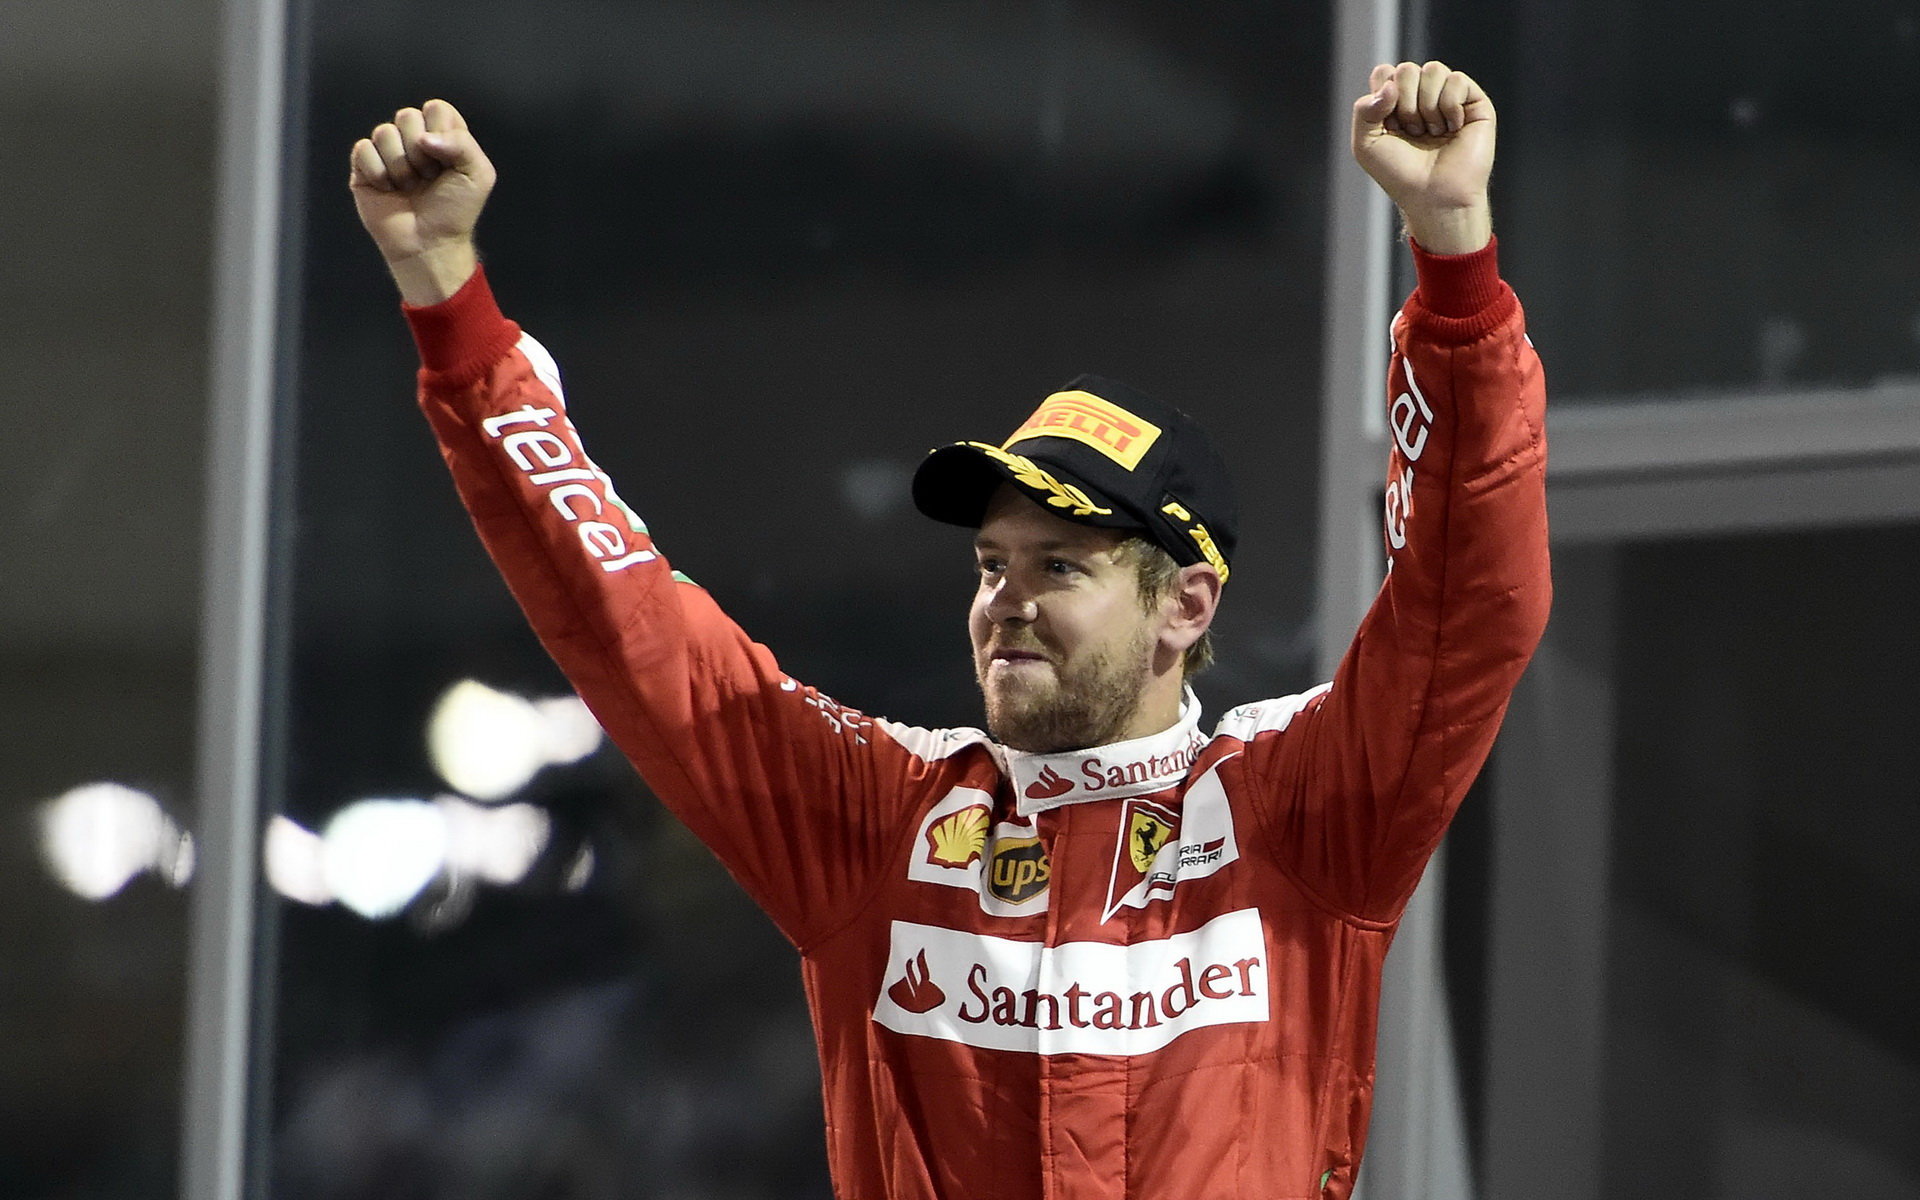 Sebastian Vettel dosáhl třetího místa, ale cítil se na víc